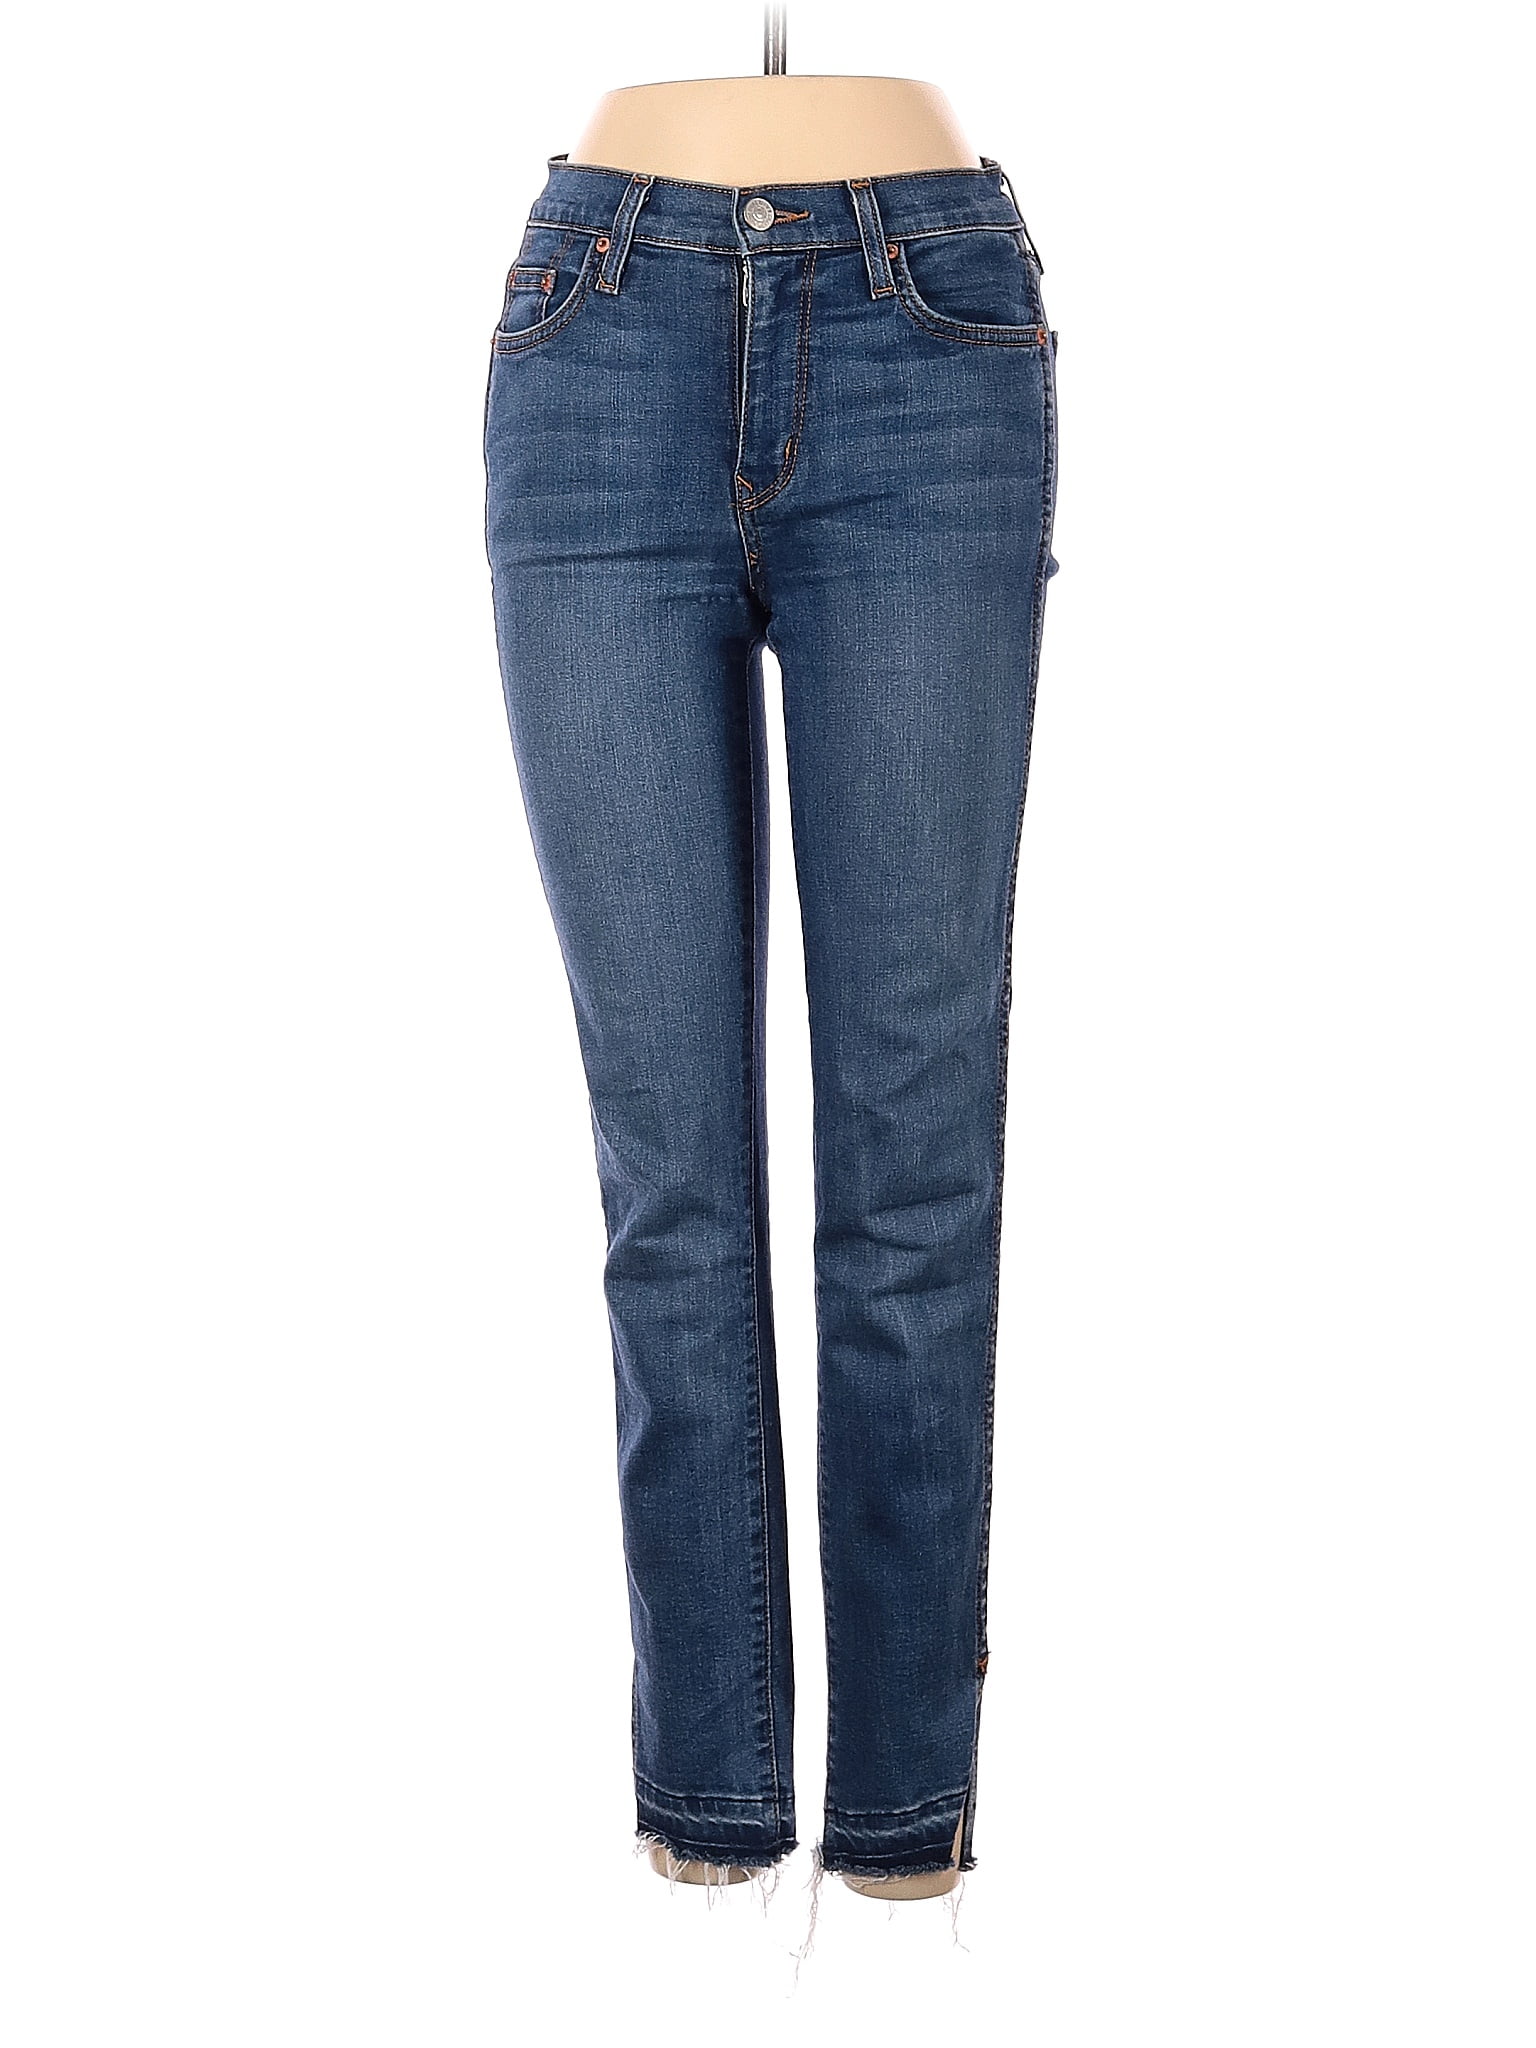 Patois voldoende verantwoordelijkheid Pre-Owned Comune Women's Size 24W Jeans - Walmart.com